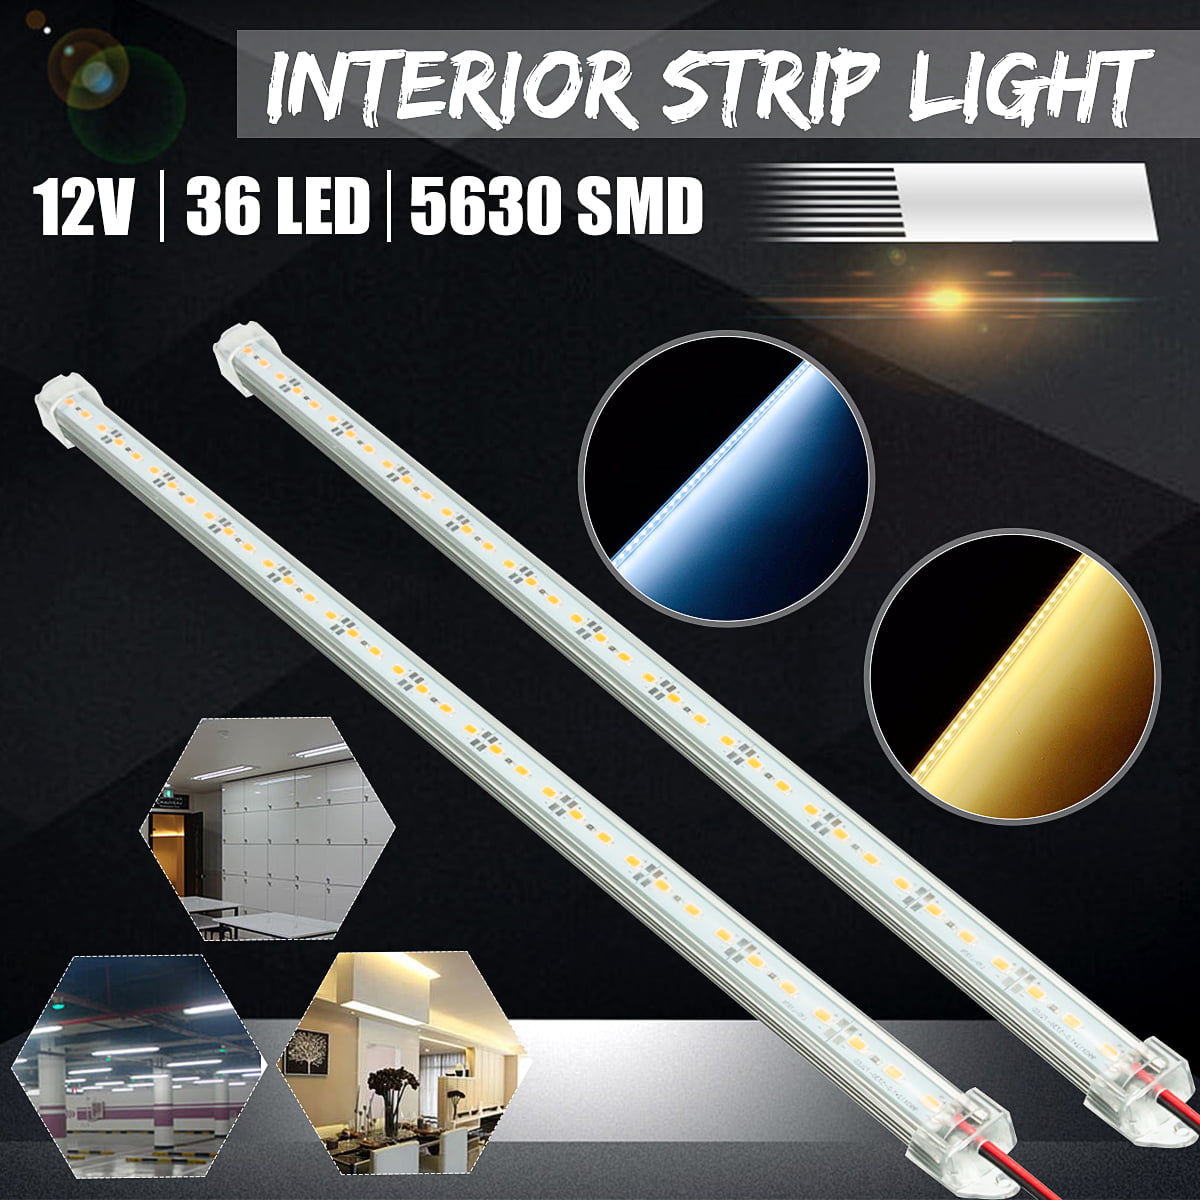 LED Strip Light 5630 SMD 12V Warm White Cool White Cabinet Home Kitchen Lighting 